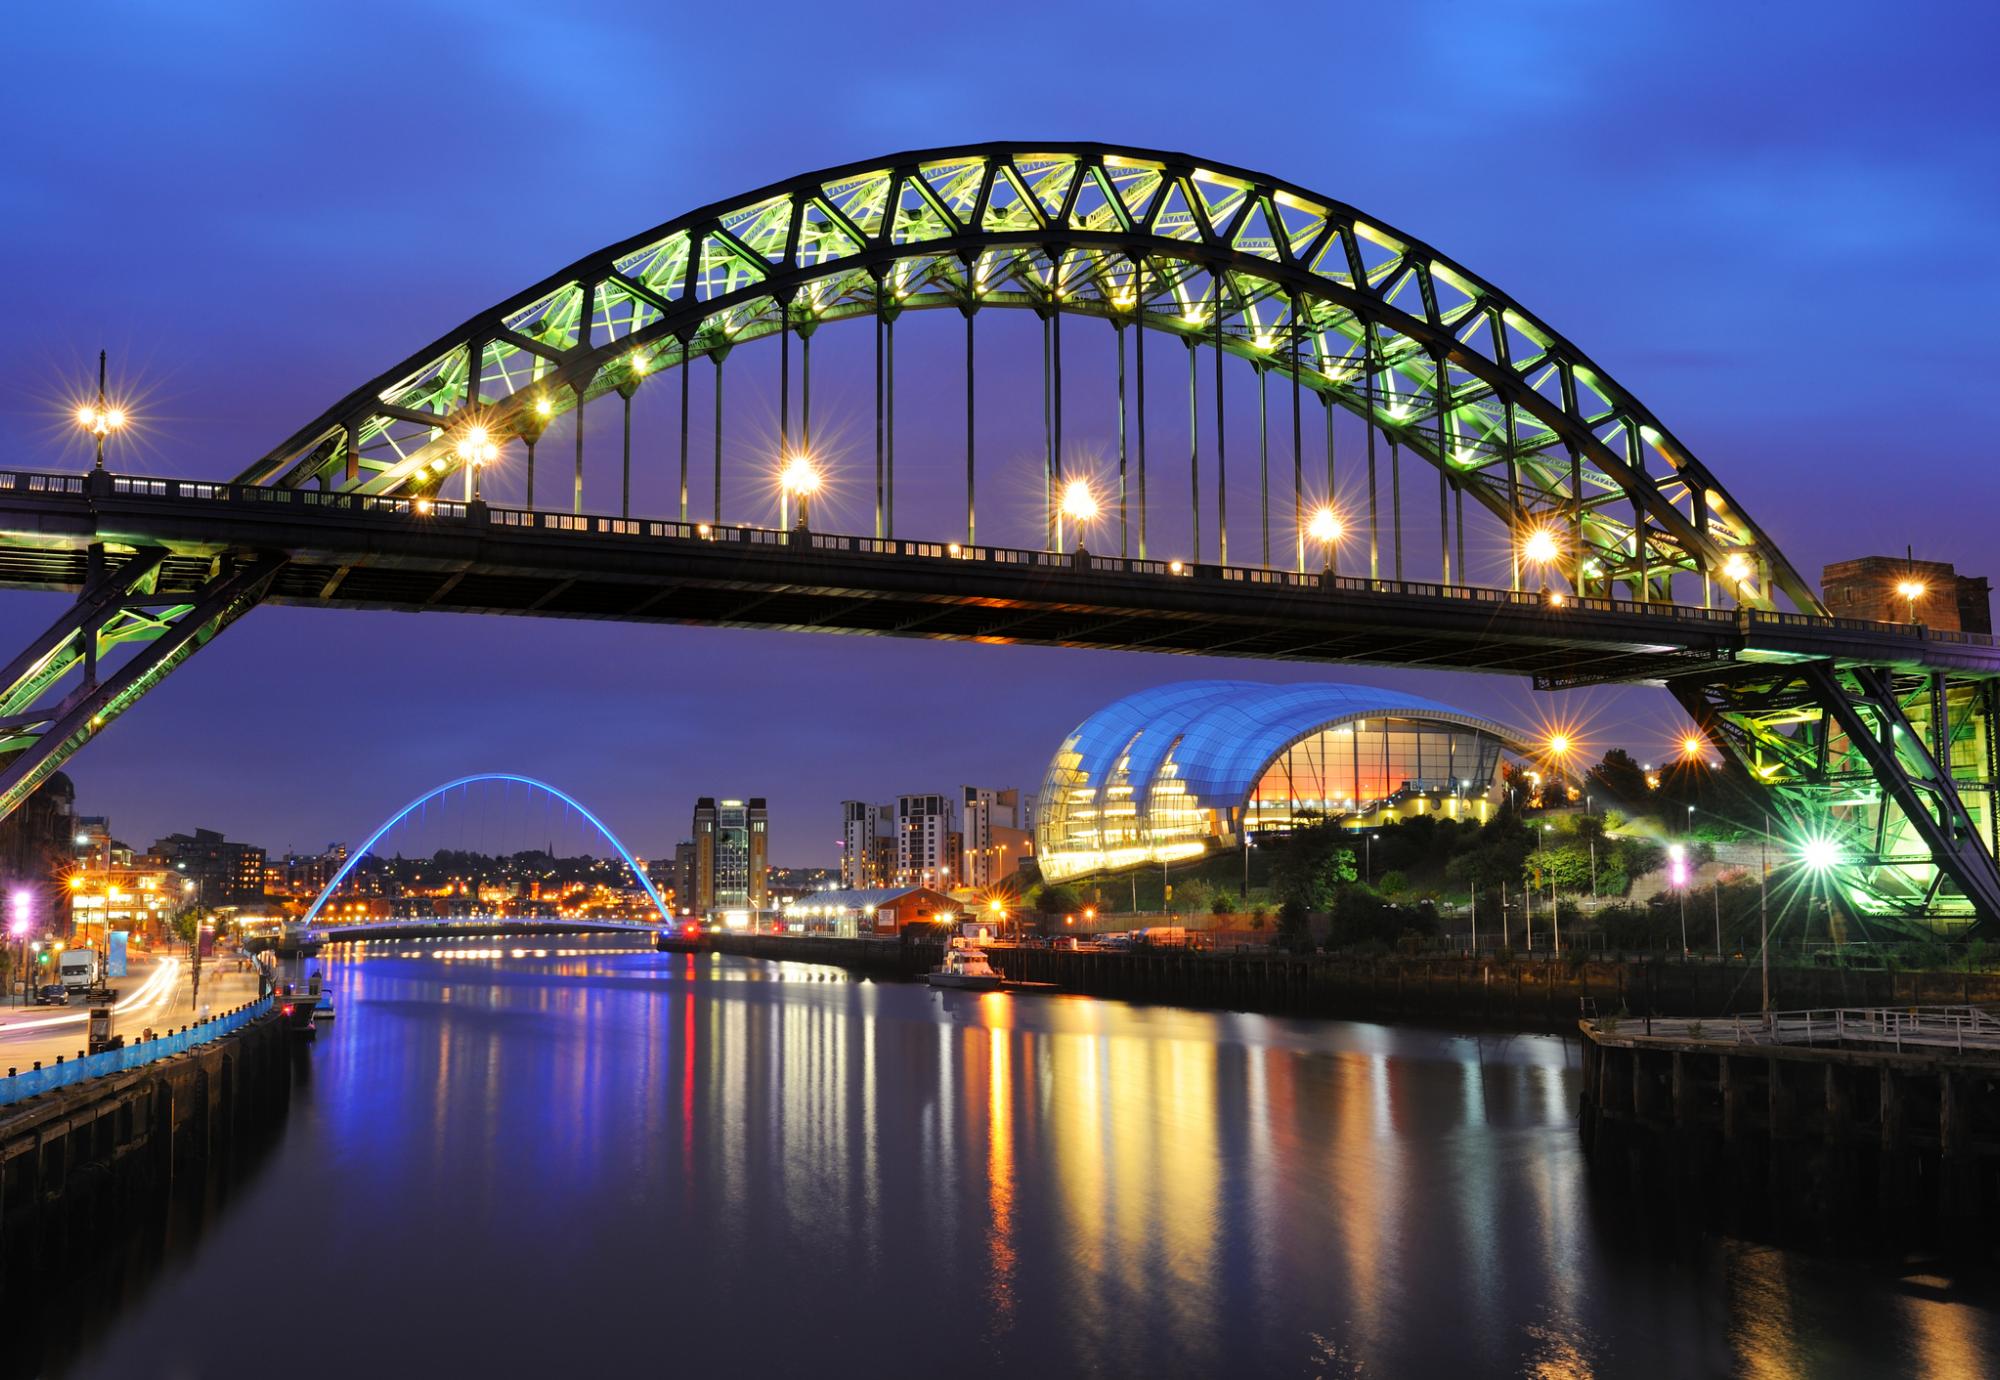 Tyne Bridge, Newcastle, England